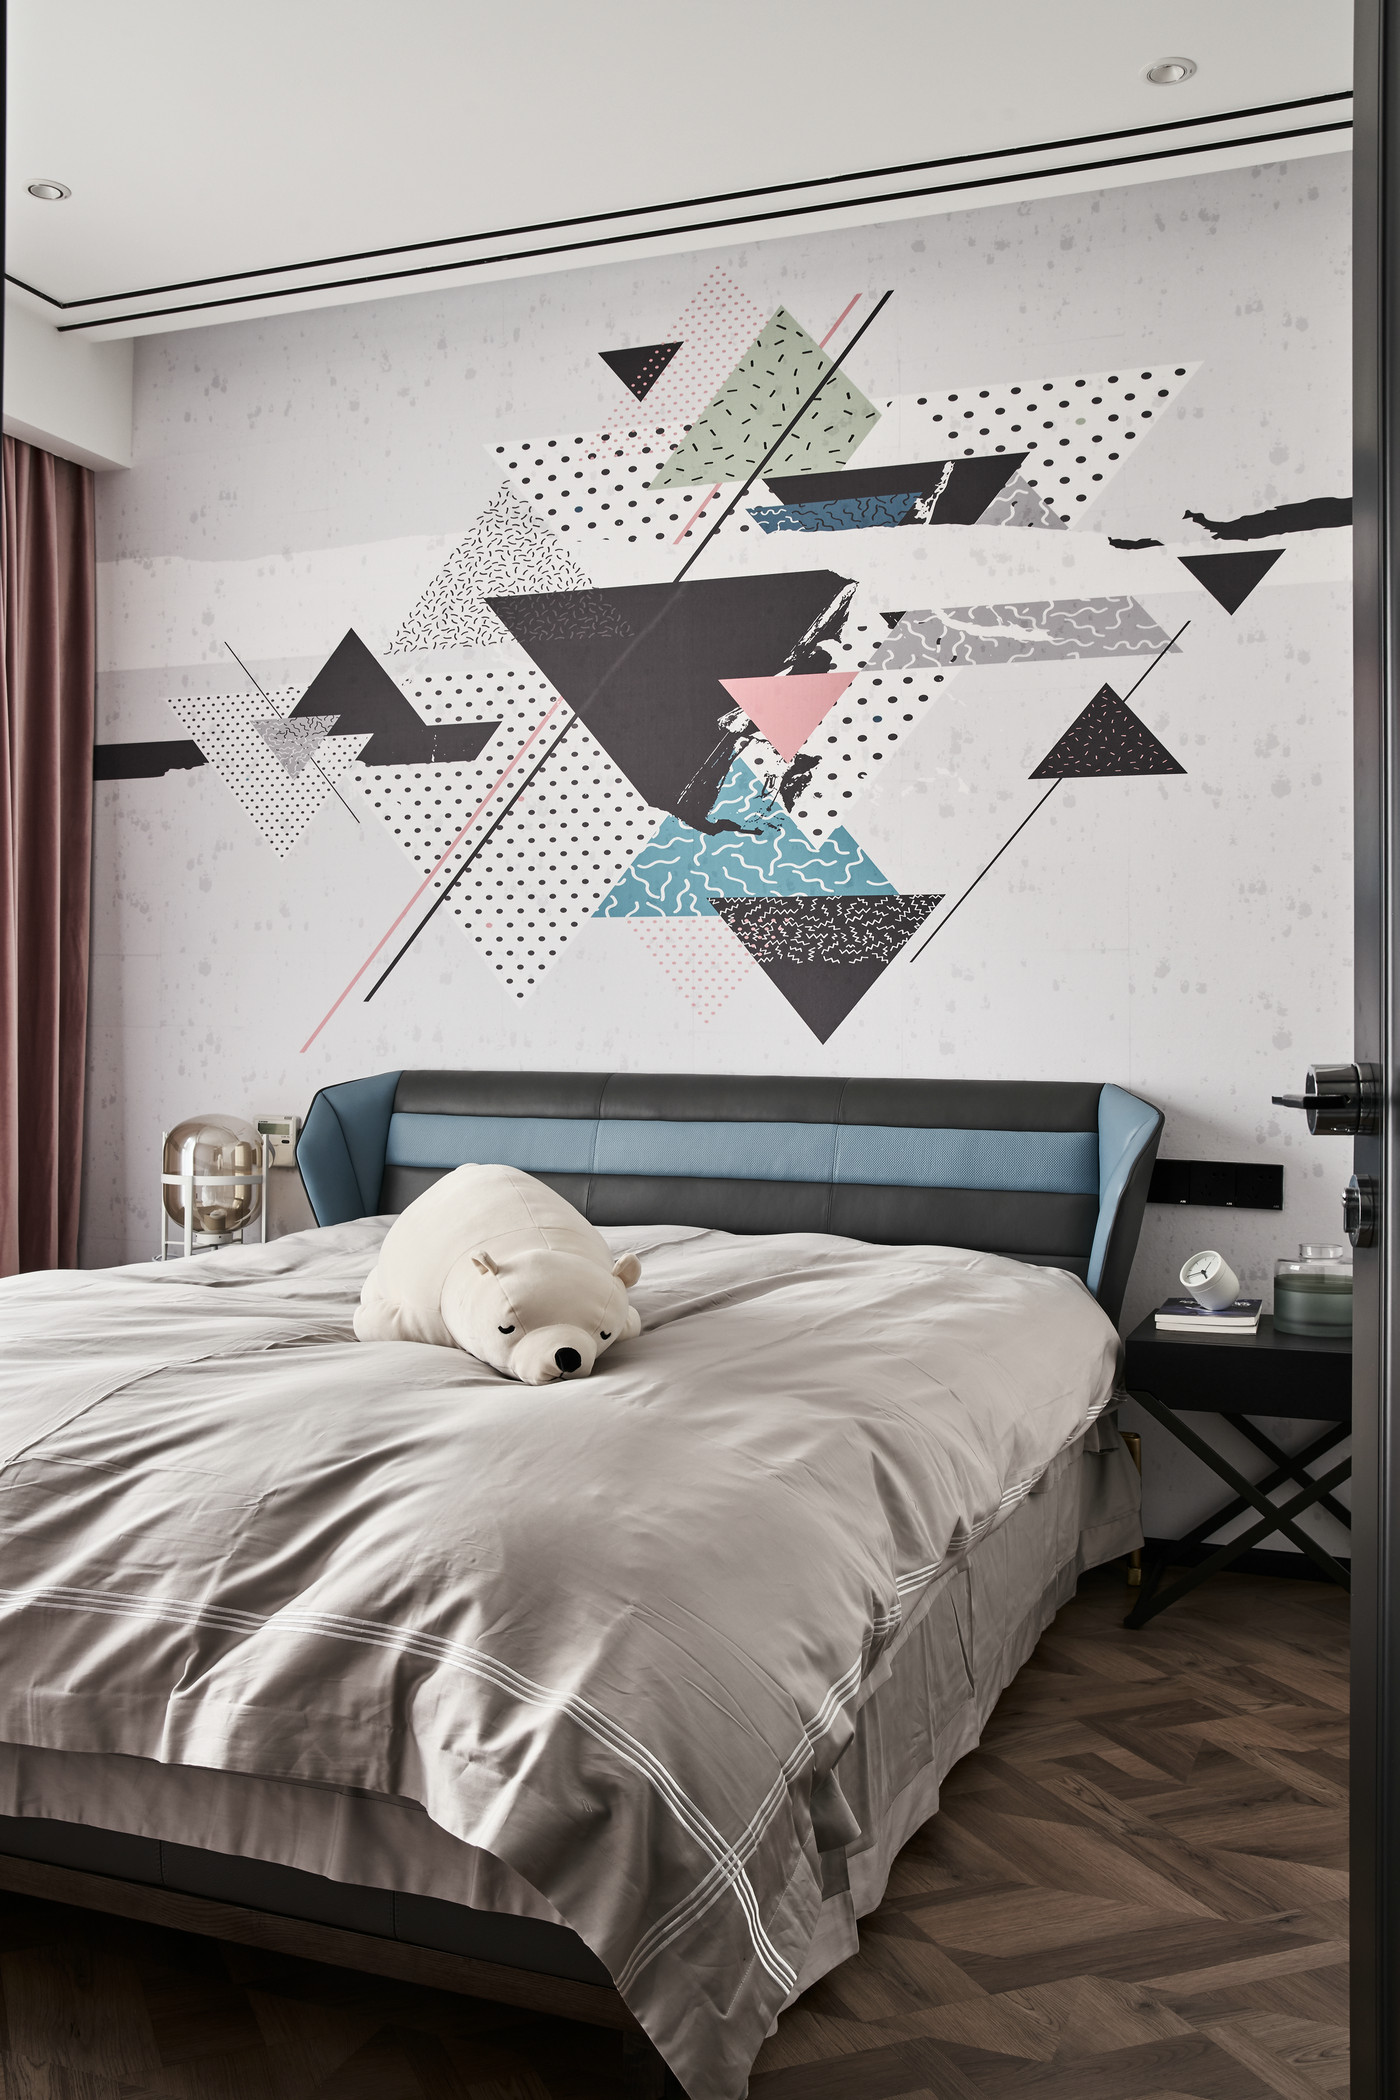 卧室背景墙设计艺术感强烈，皮质床头塑造文艺简约感，整体配色干净。